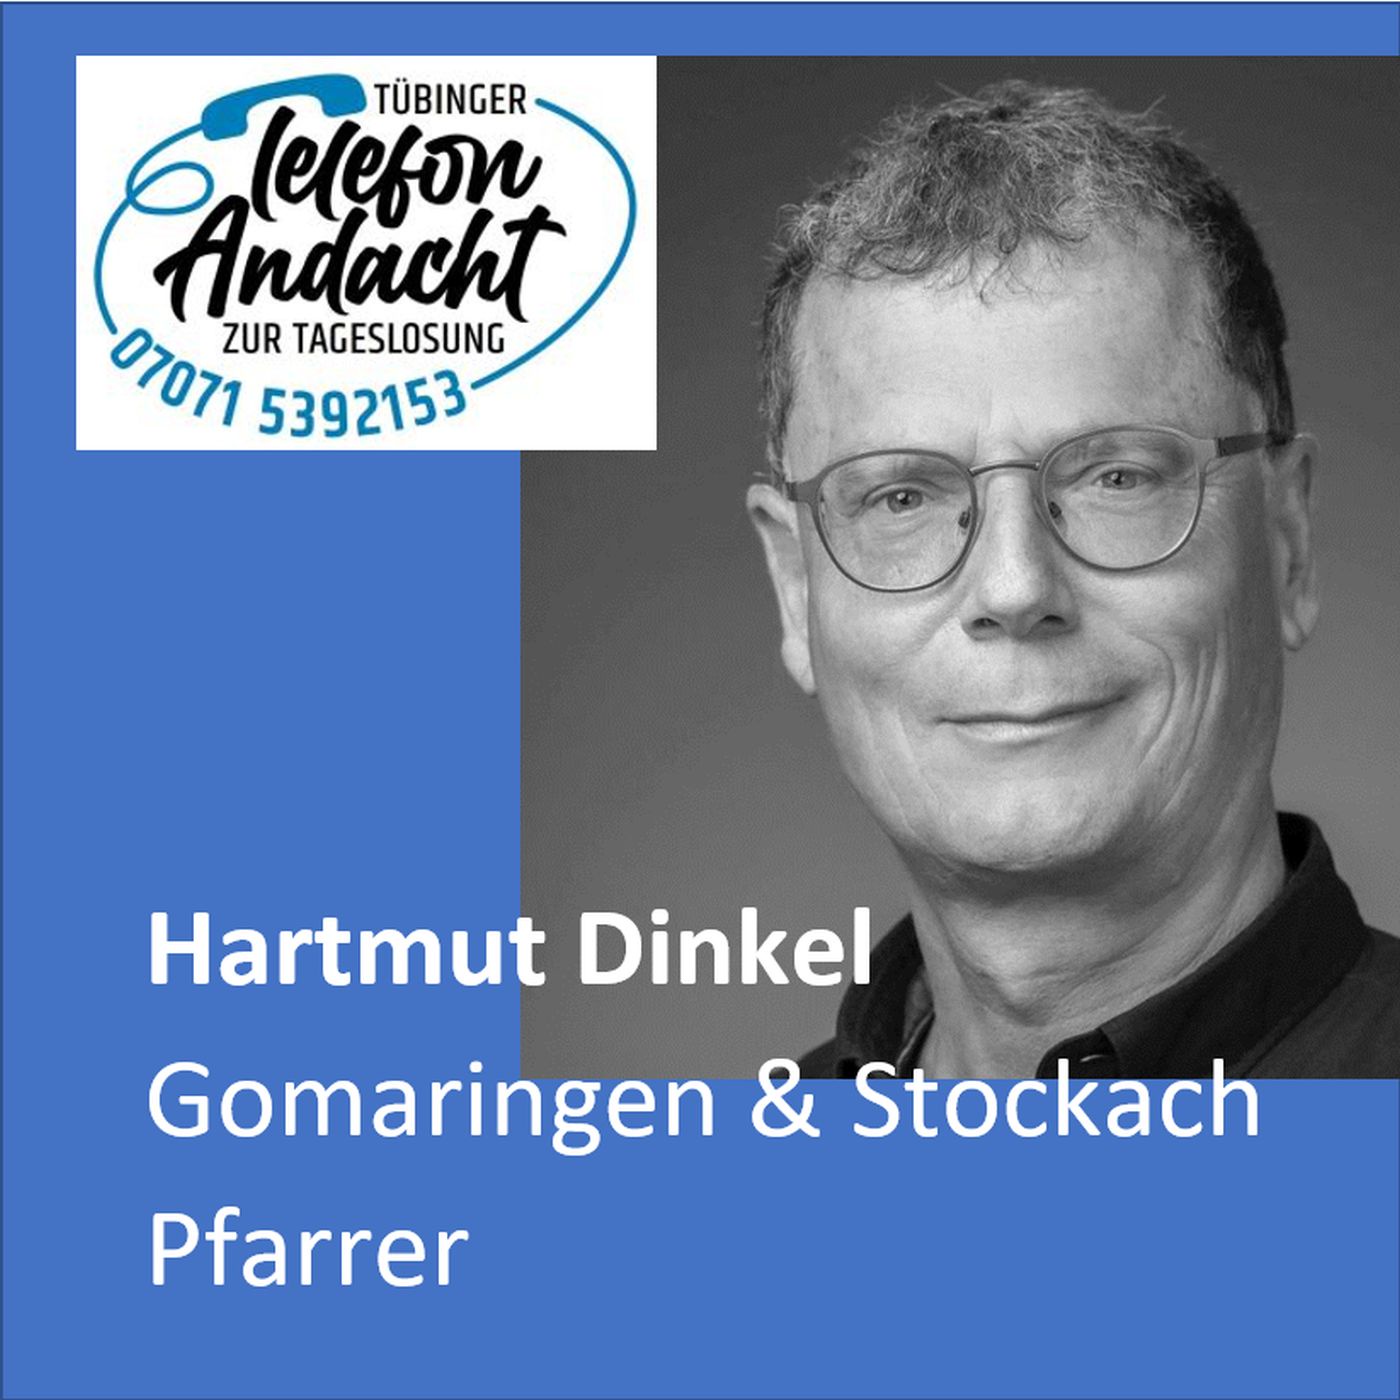 23 05 15 Hartmut Dinkel